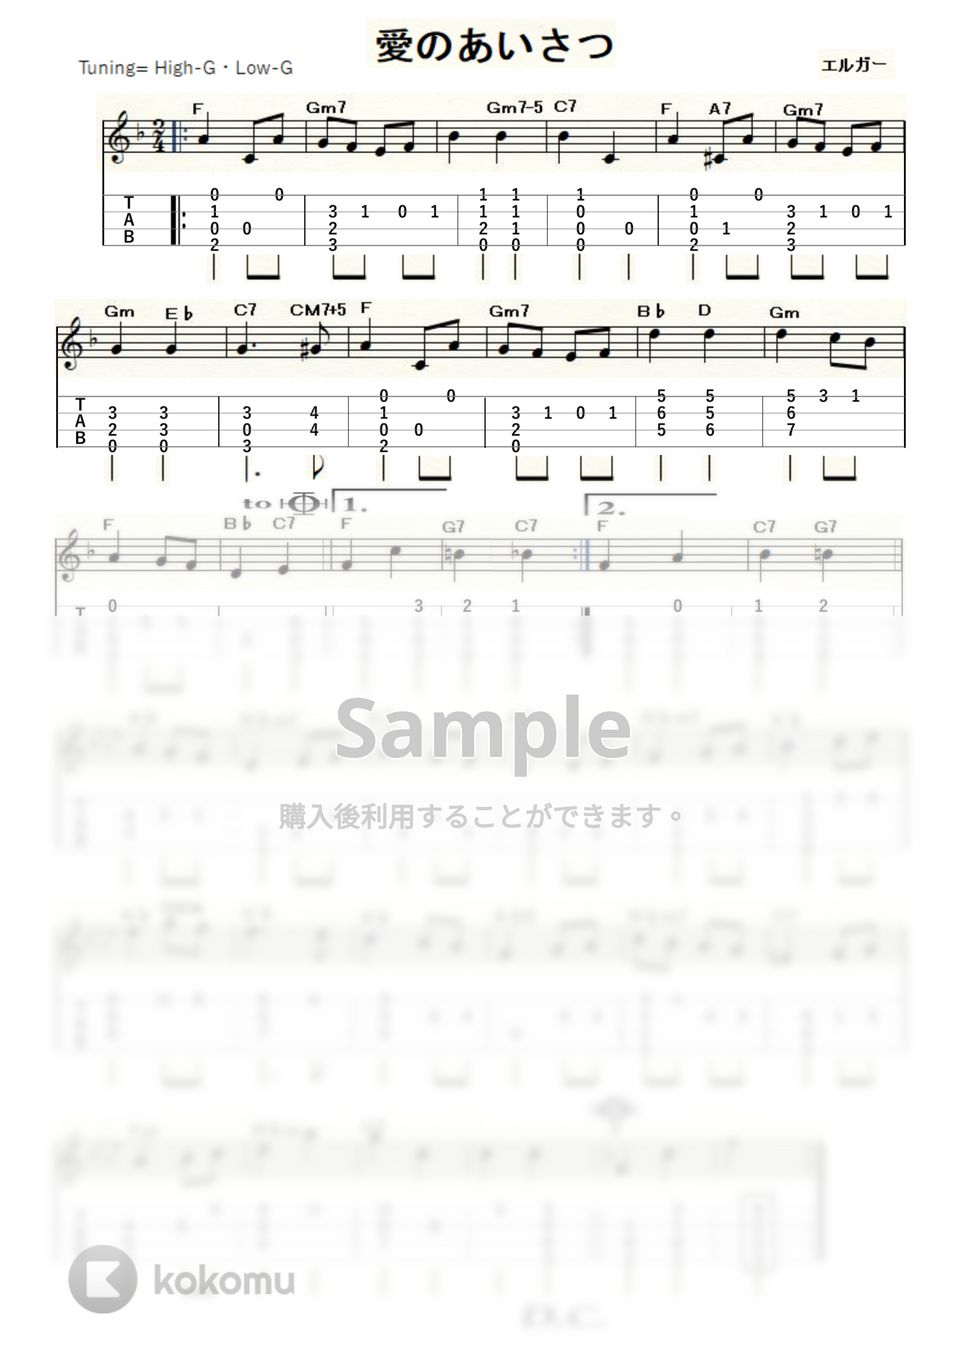 エルガー - 愛のあいさつ (ｳｸﾚﾚｿﾛ / High-G,Low-G / 中級) by ukulelepapa